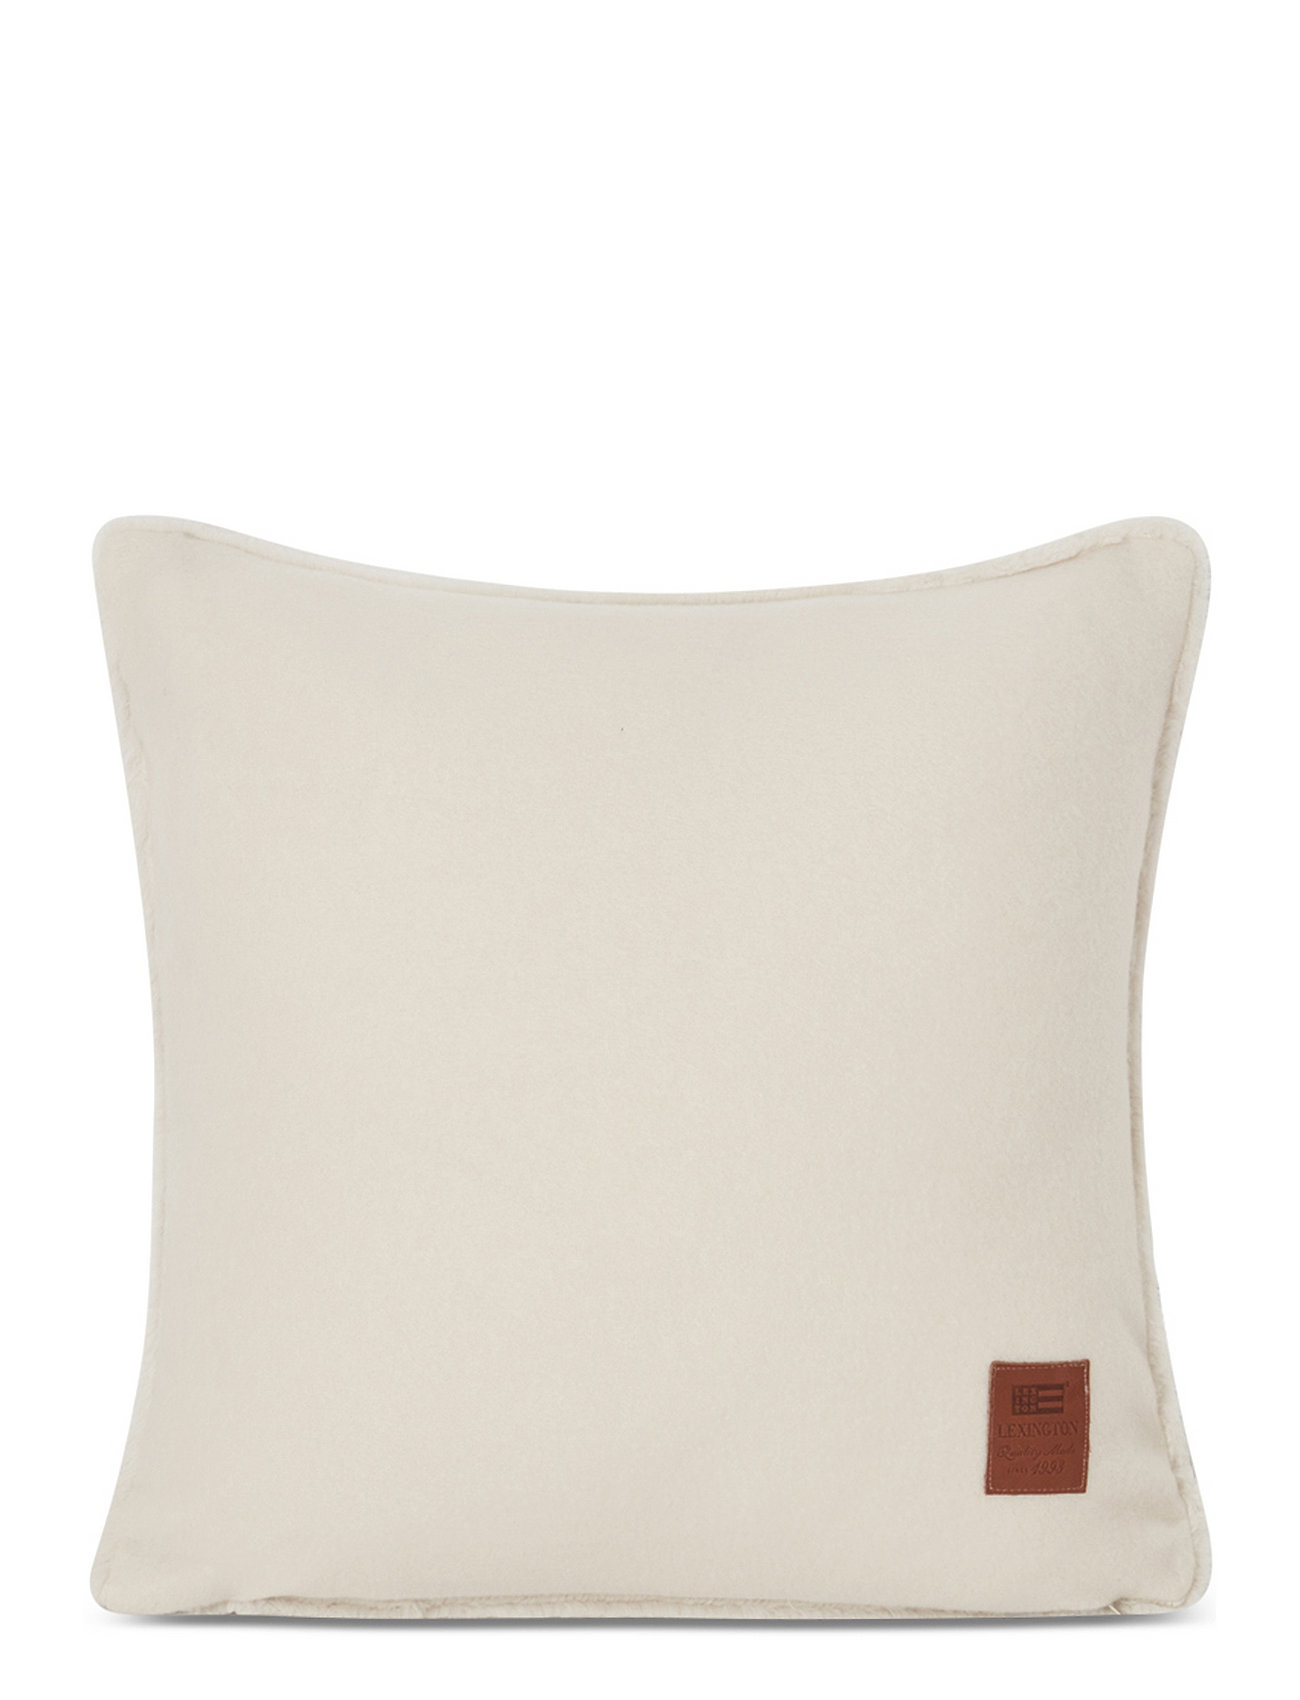 Faux Fur Pillow Cover Home Textiles Cushions & Blankets Cushion Covers Cream Lexington Home